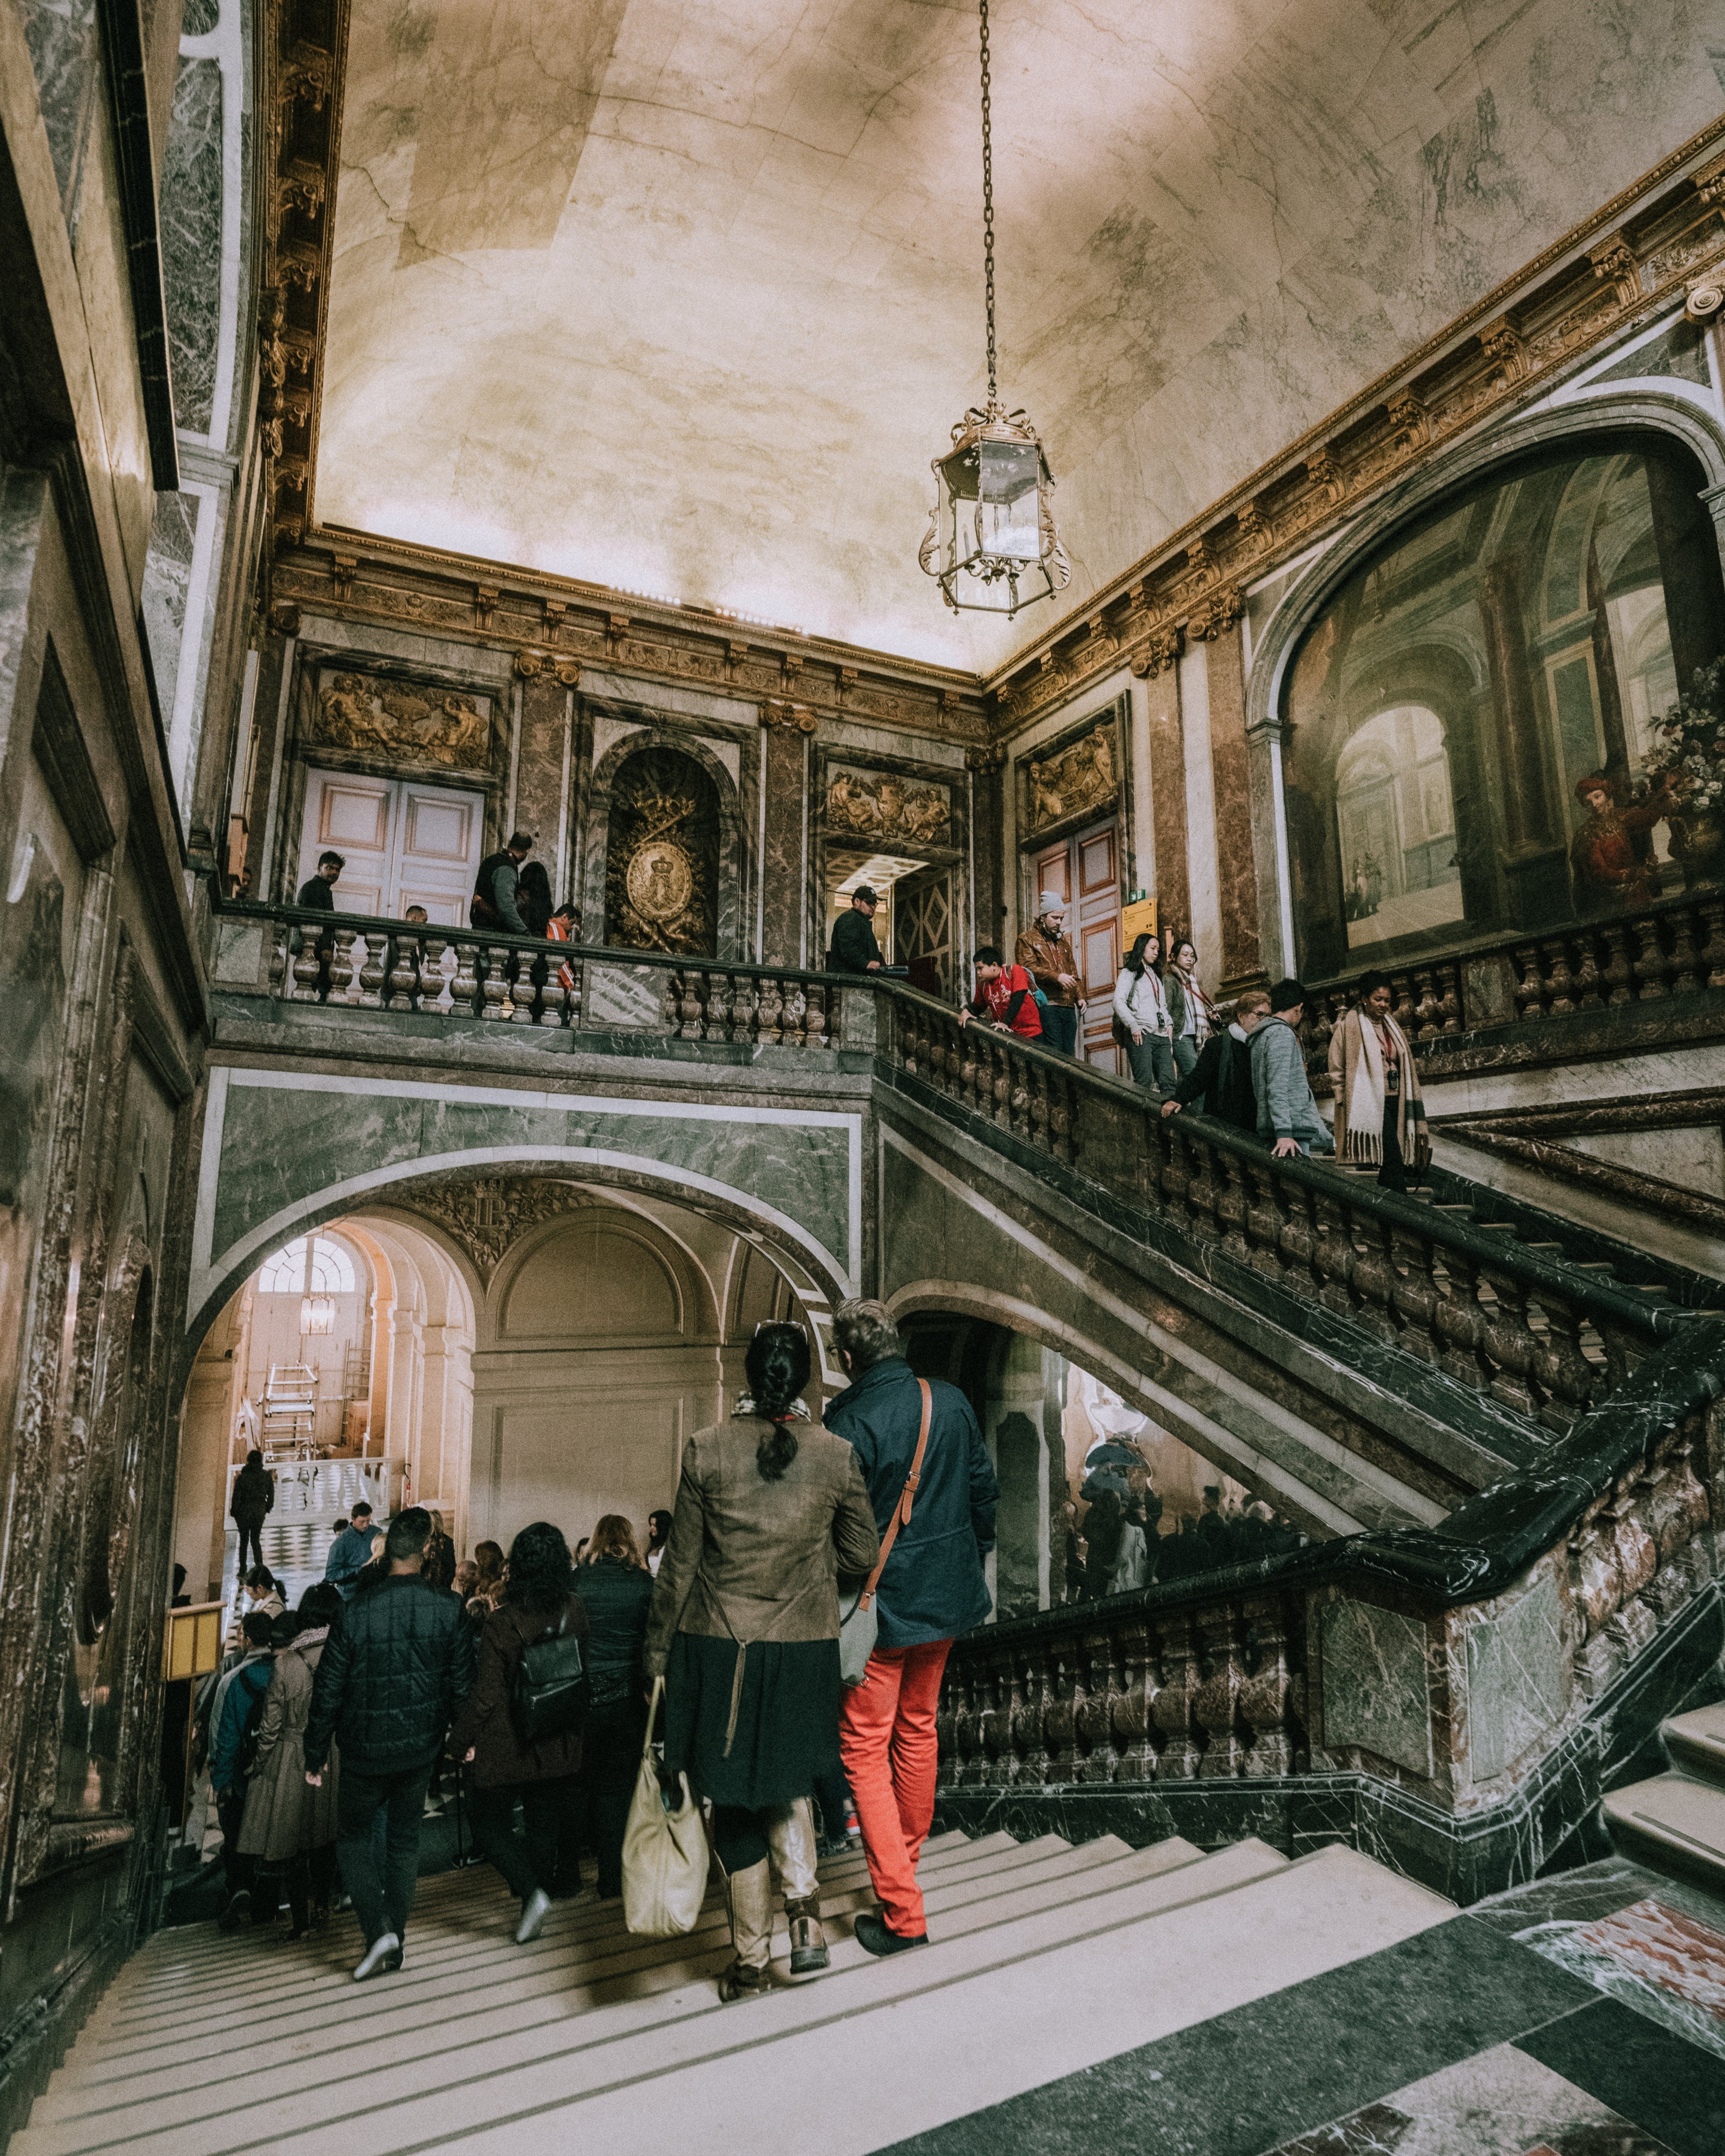 touristes se promenant dans l'escalier d'un musée ancien